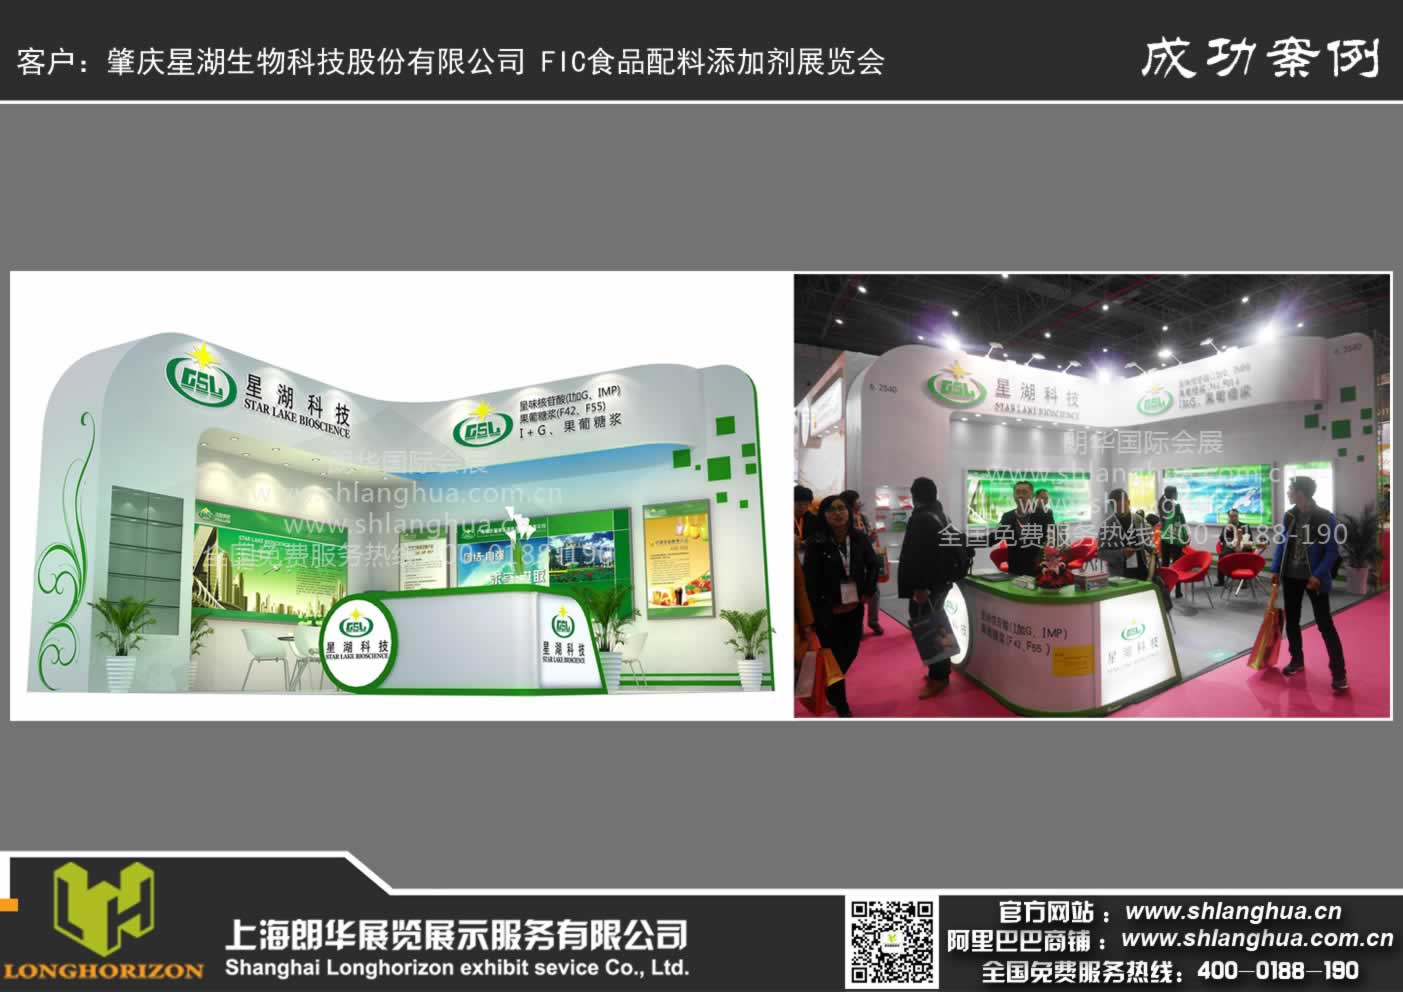 肇庆星湖生物科技股份有限公司 FIC食品配料添加剂展览会